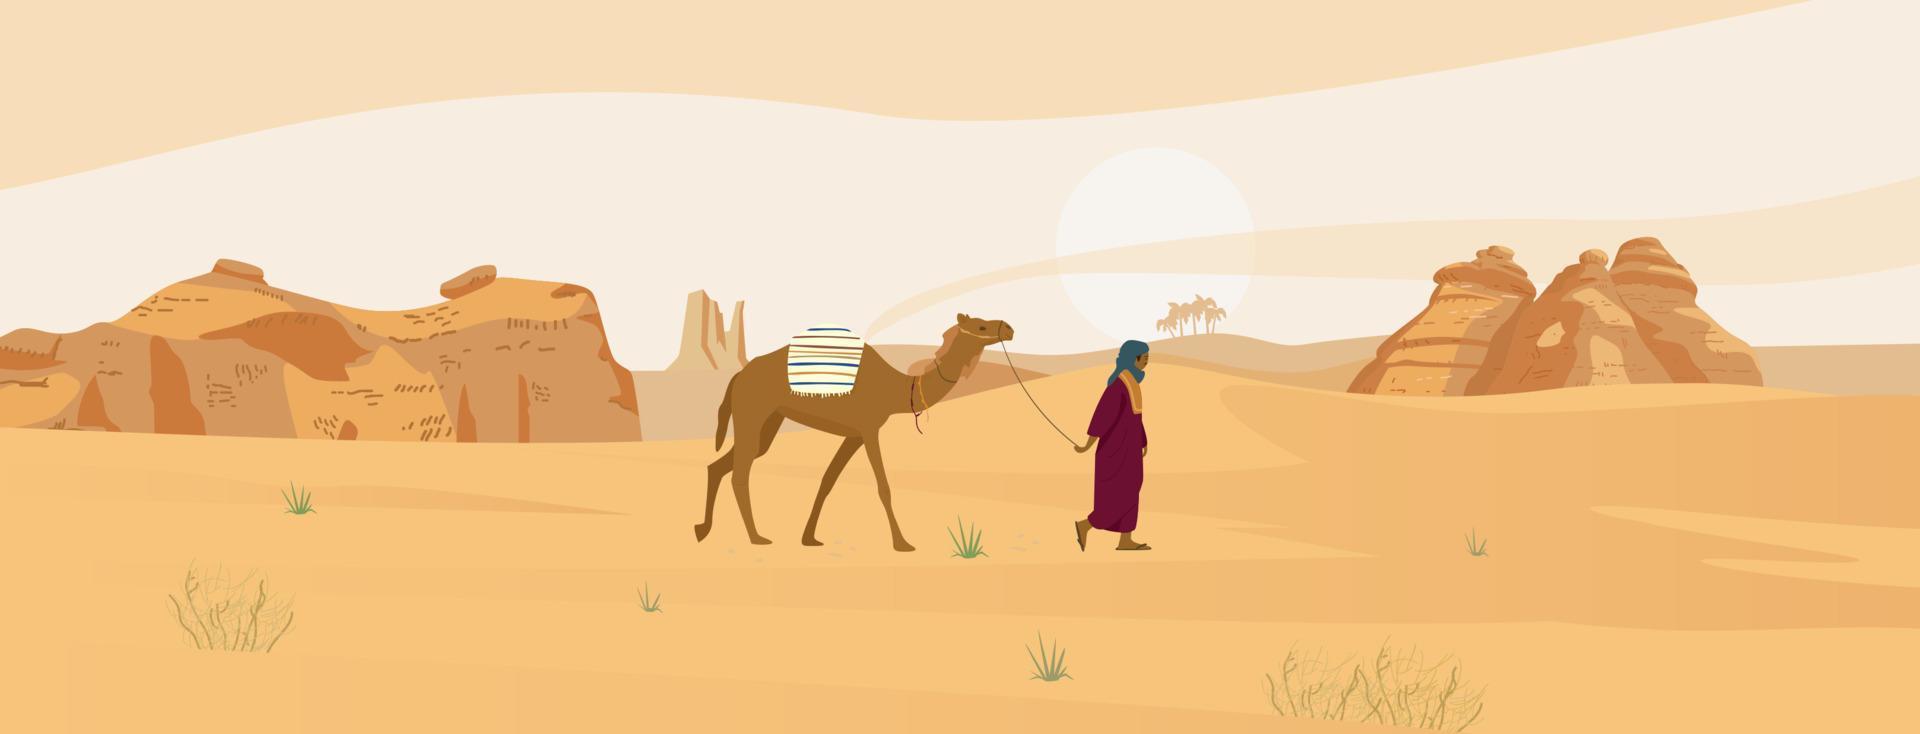 Wüstenlandschaft Saudi-Arabiens mit Beduinen mit Kamel- und Sandfelsen. Vektor-Illustration. vektor